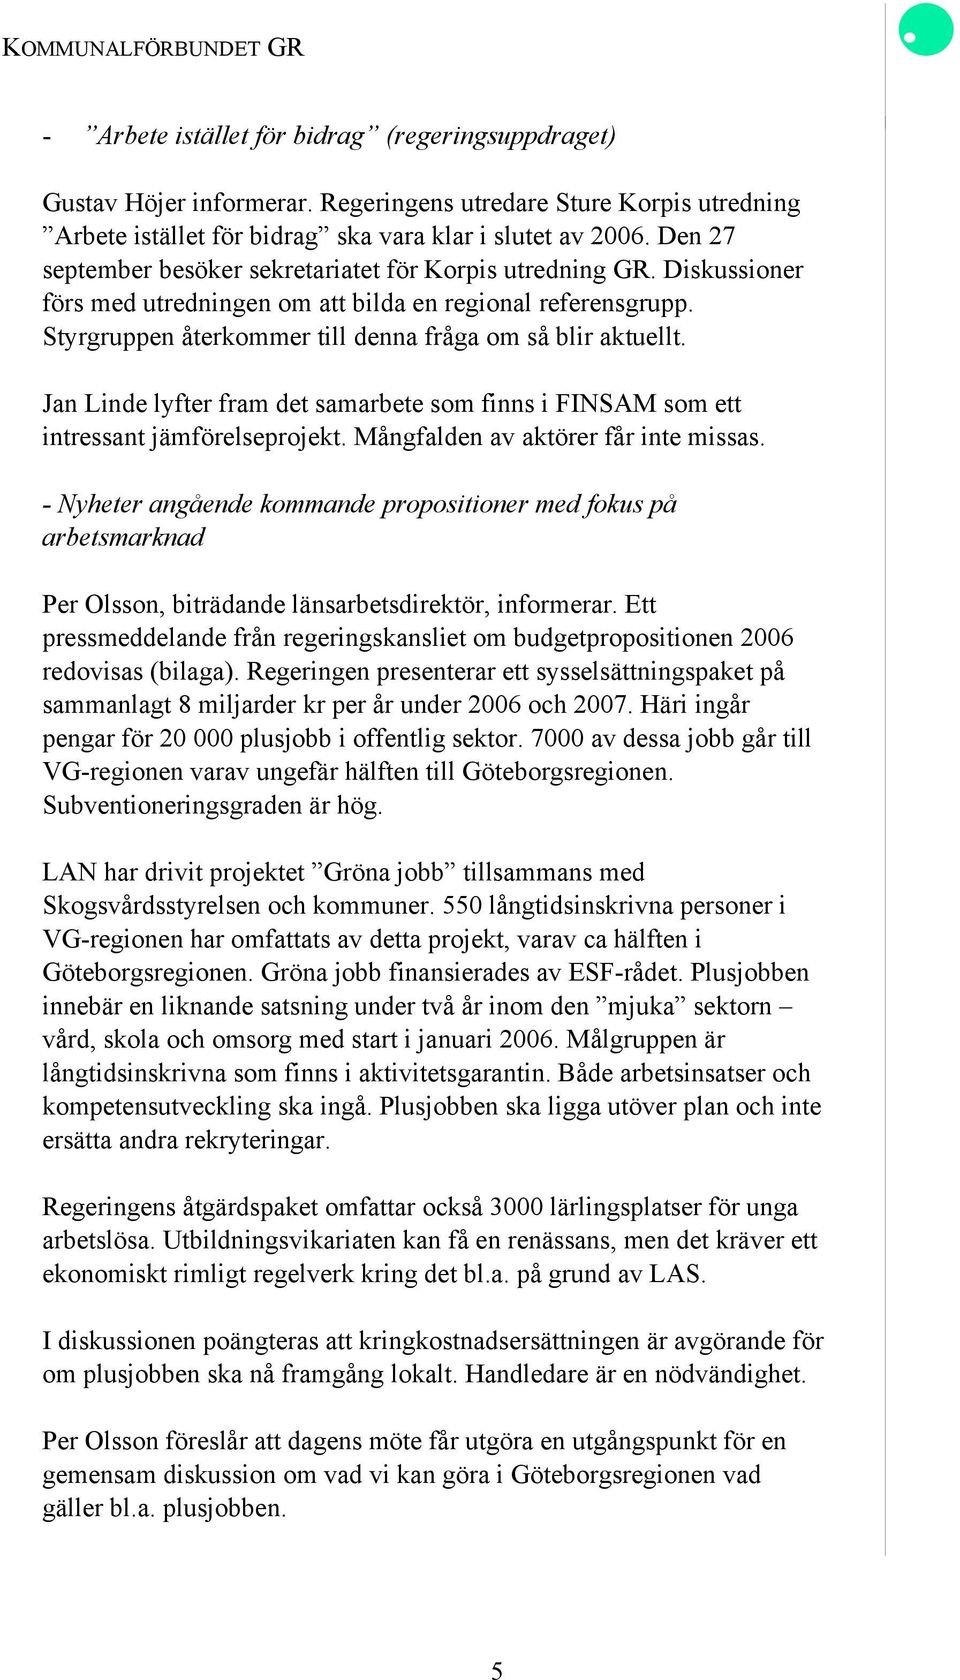 Jan Linde lyfter fram det samarbete som finns i FINSAM som ett intressant jämförelseprojekt. Mångfalden av aktörer får inte missas.